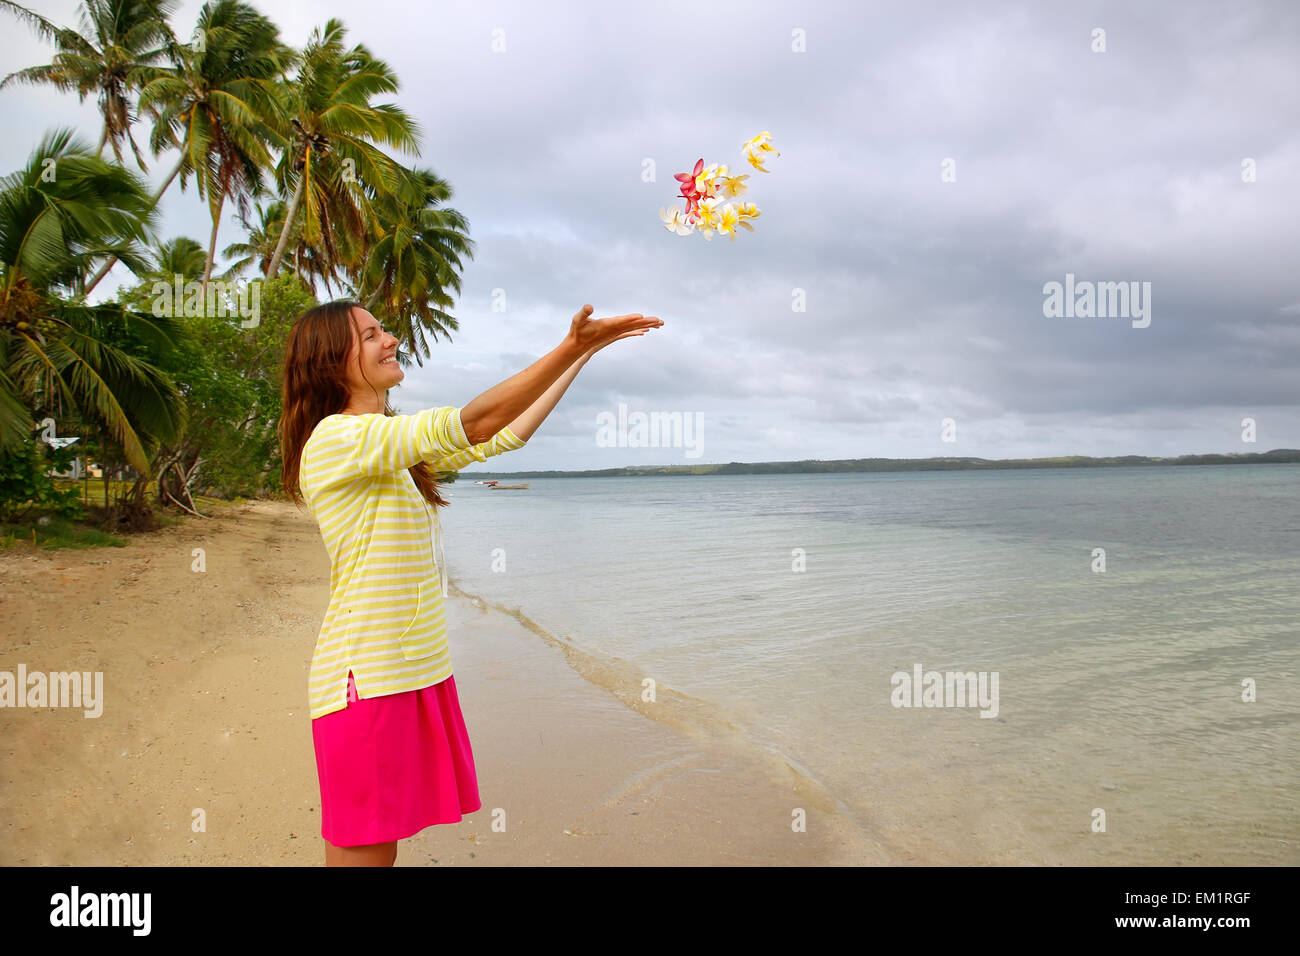 Jeune femme sur une plage de jeter des fleurs dans l'air, Ofu island, Tonga Banque D'Images